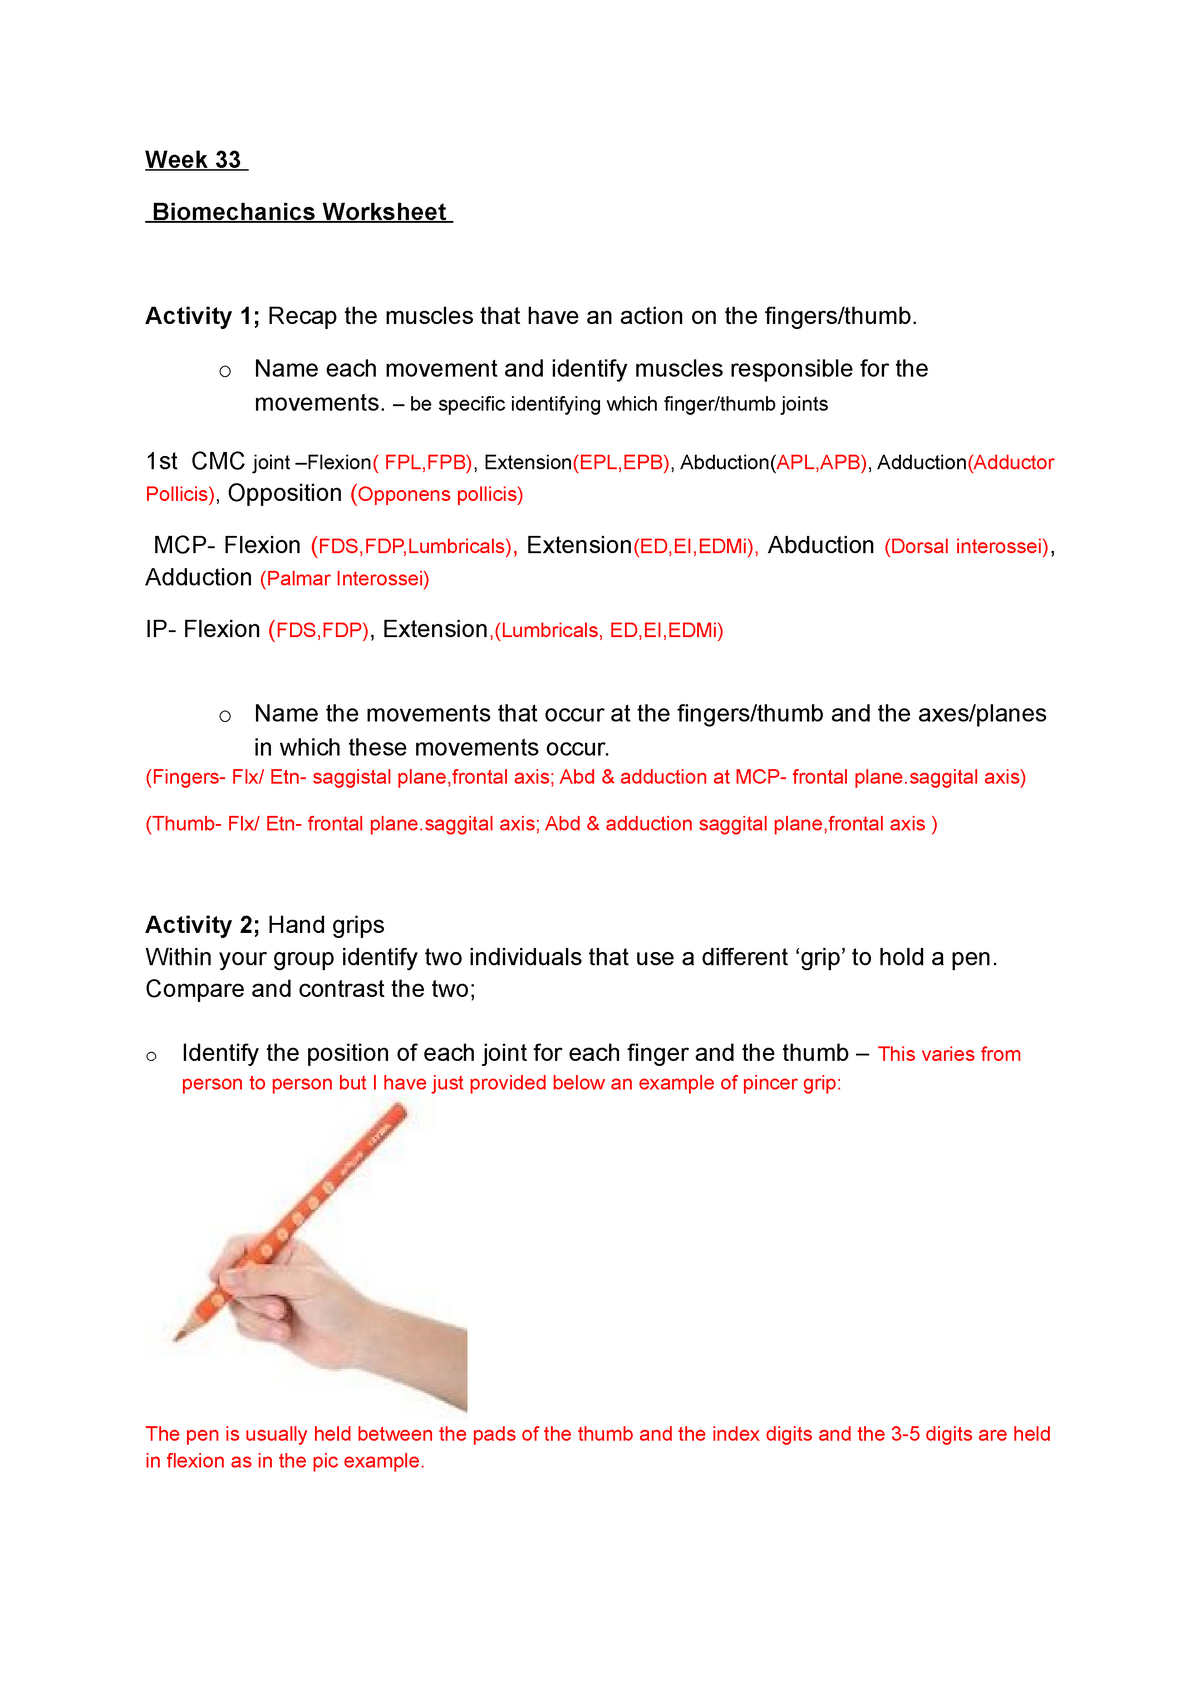 Hand grip - hand grip biomechanics Week 11 Biomechanics Worksheet Pertaining To Joints And Movement Worksheet